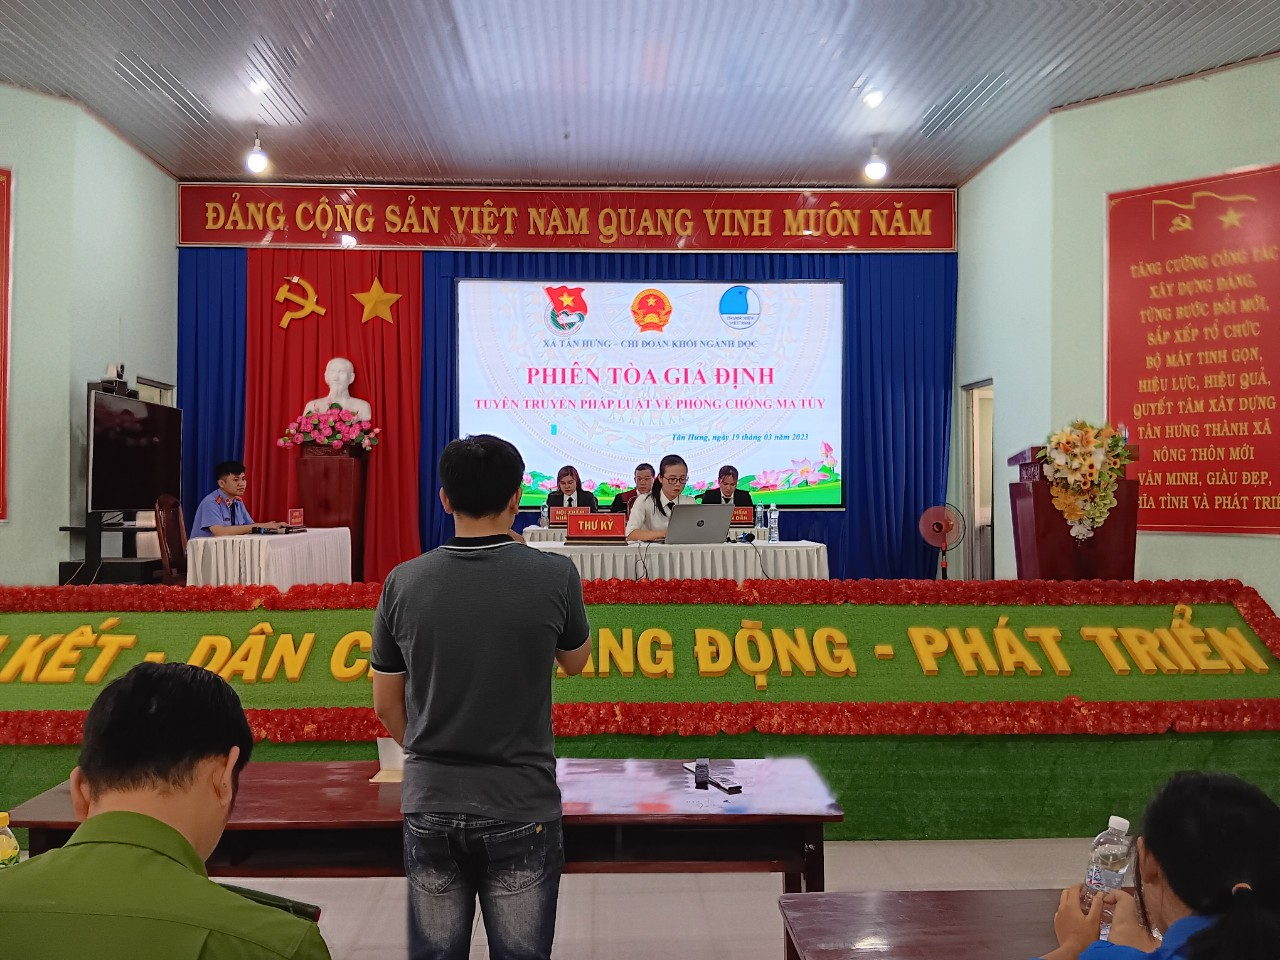 Ủy ban nhân dân xã Tân Hưng (UBND) tiến hành “Phiên tòa giã định” nhằm phổ biến, giáo dục pháp luật cho đối tượng Đoàn viên thanh niên; Đối tượng đặc thù; Nhân dân trên địa bàn xã.